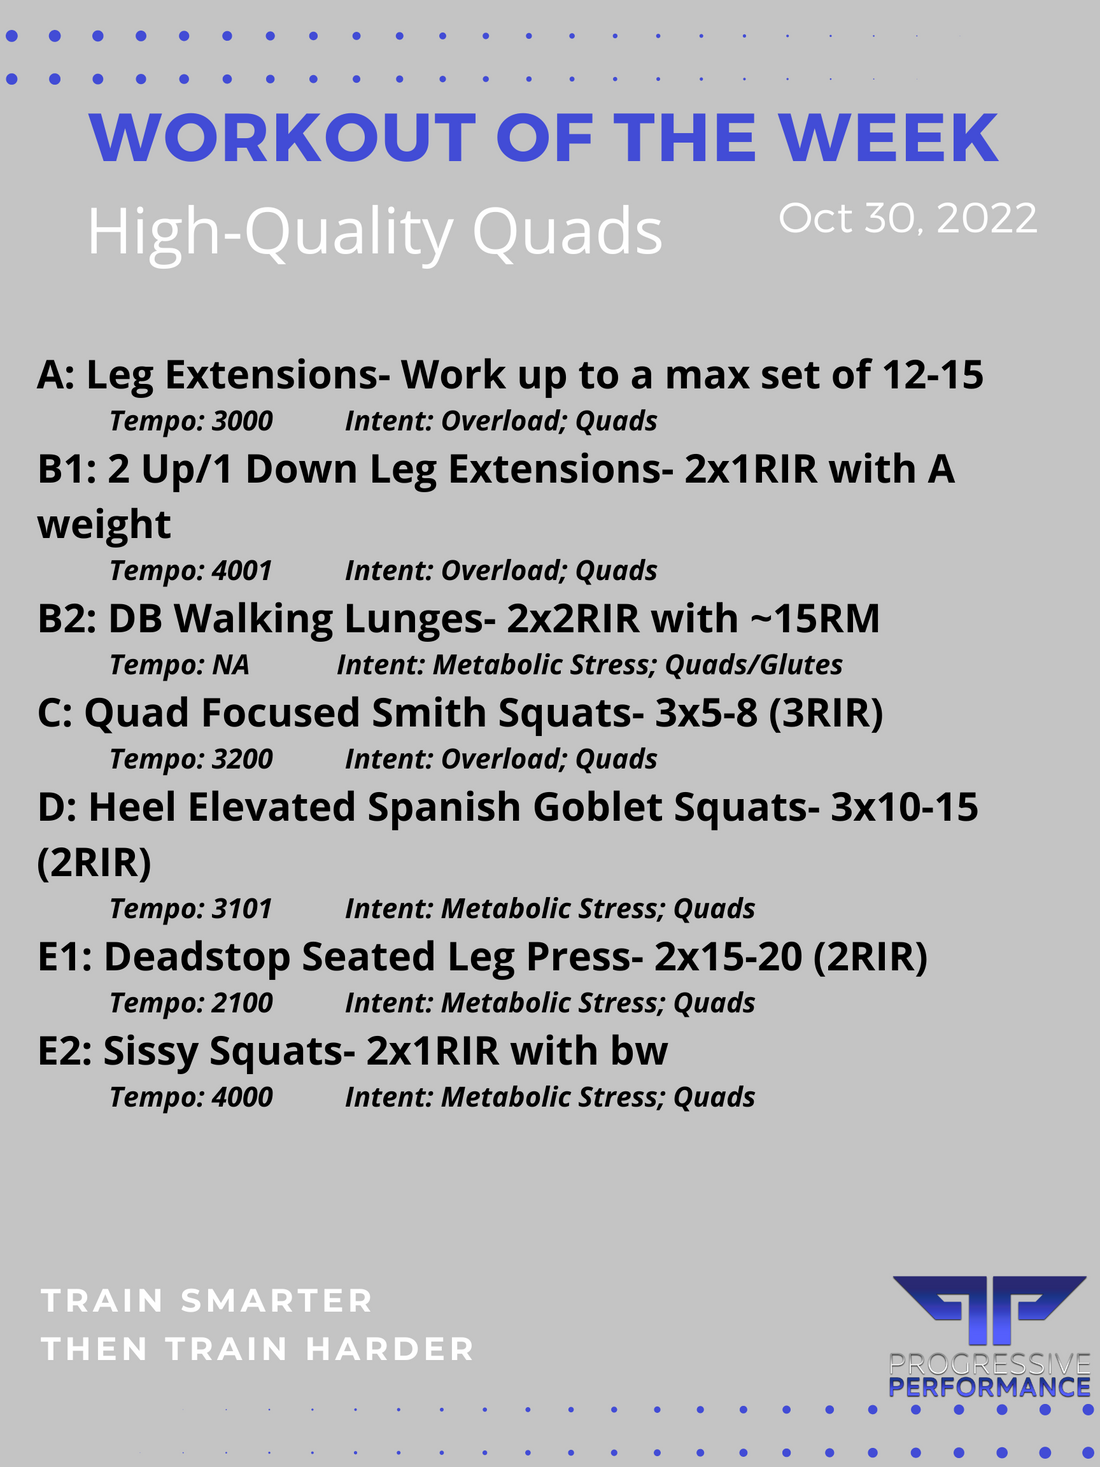 High-Quality Quads